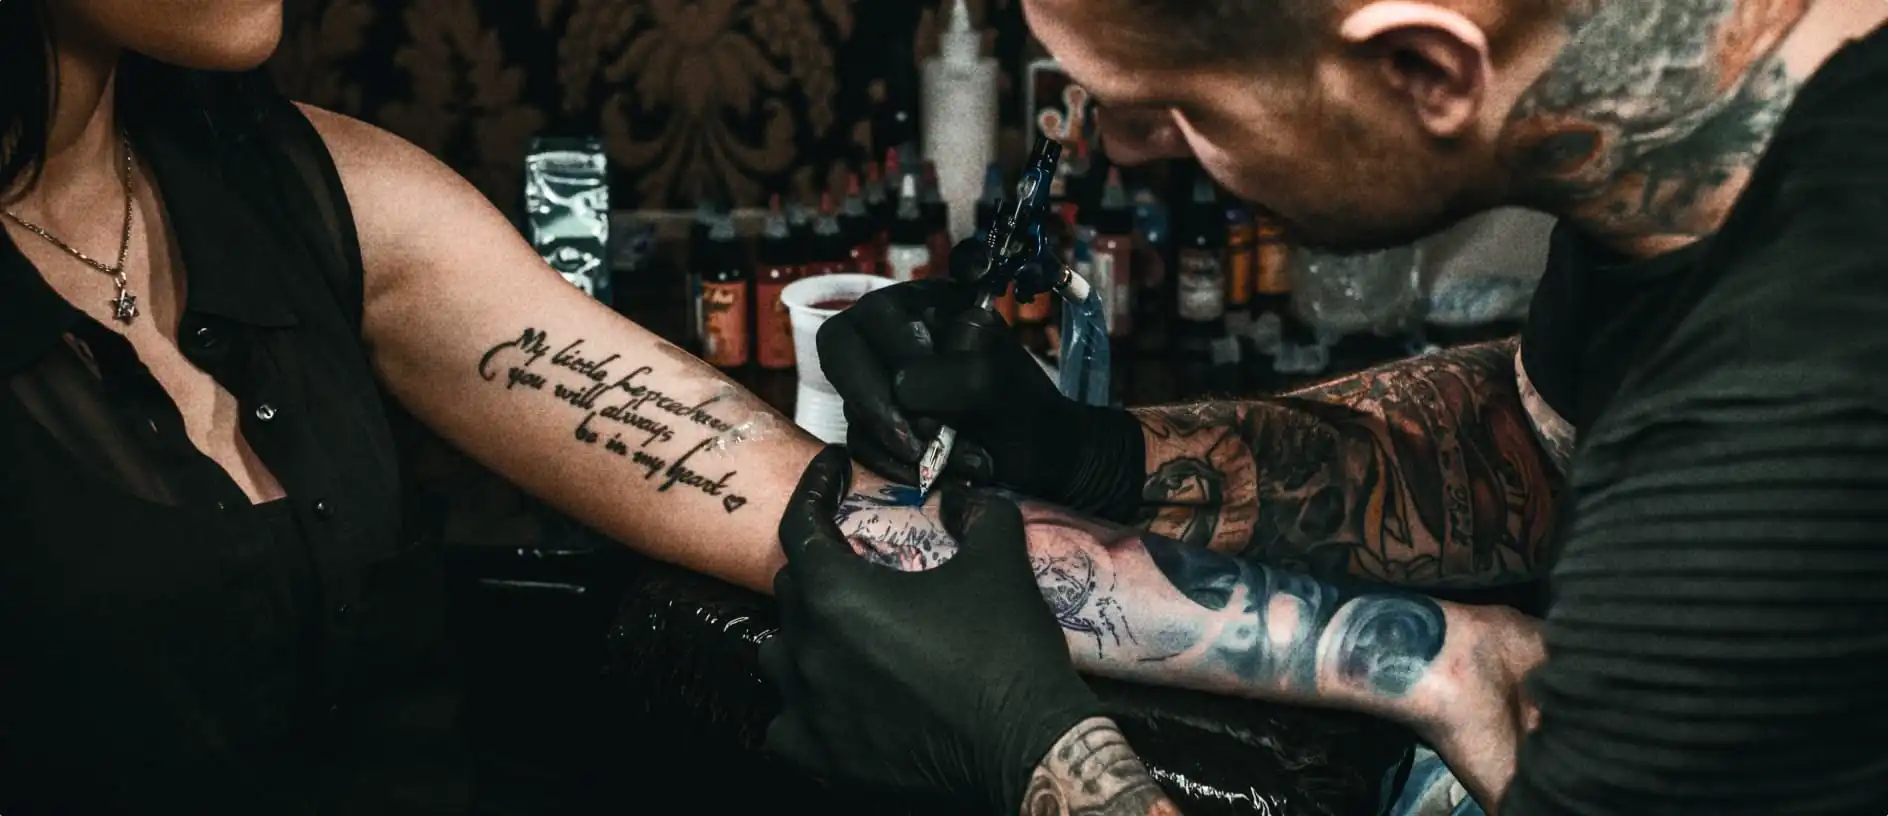 tattoo artists tattooing arm